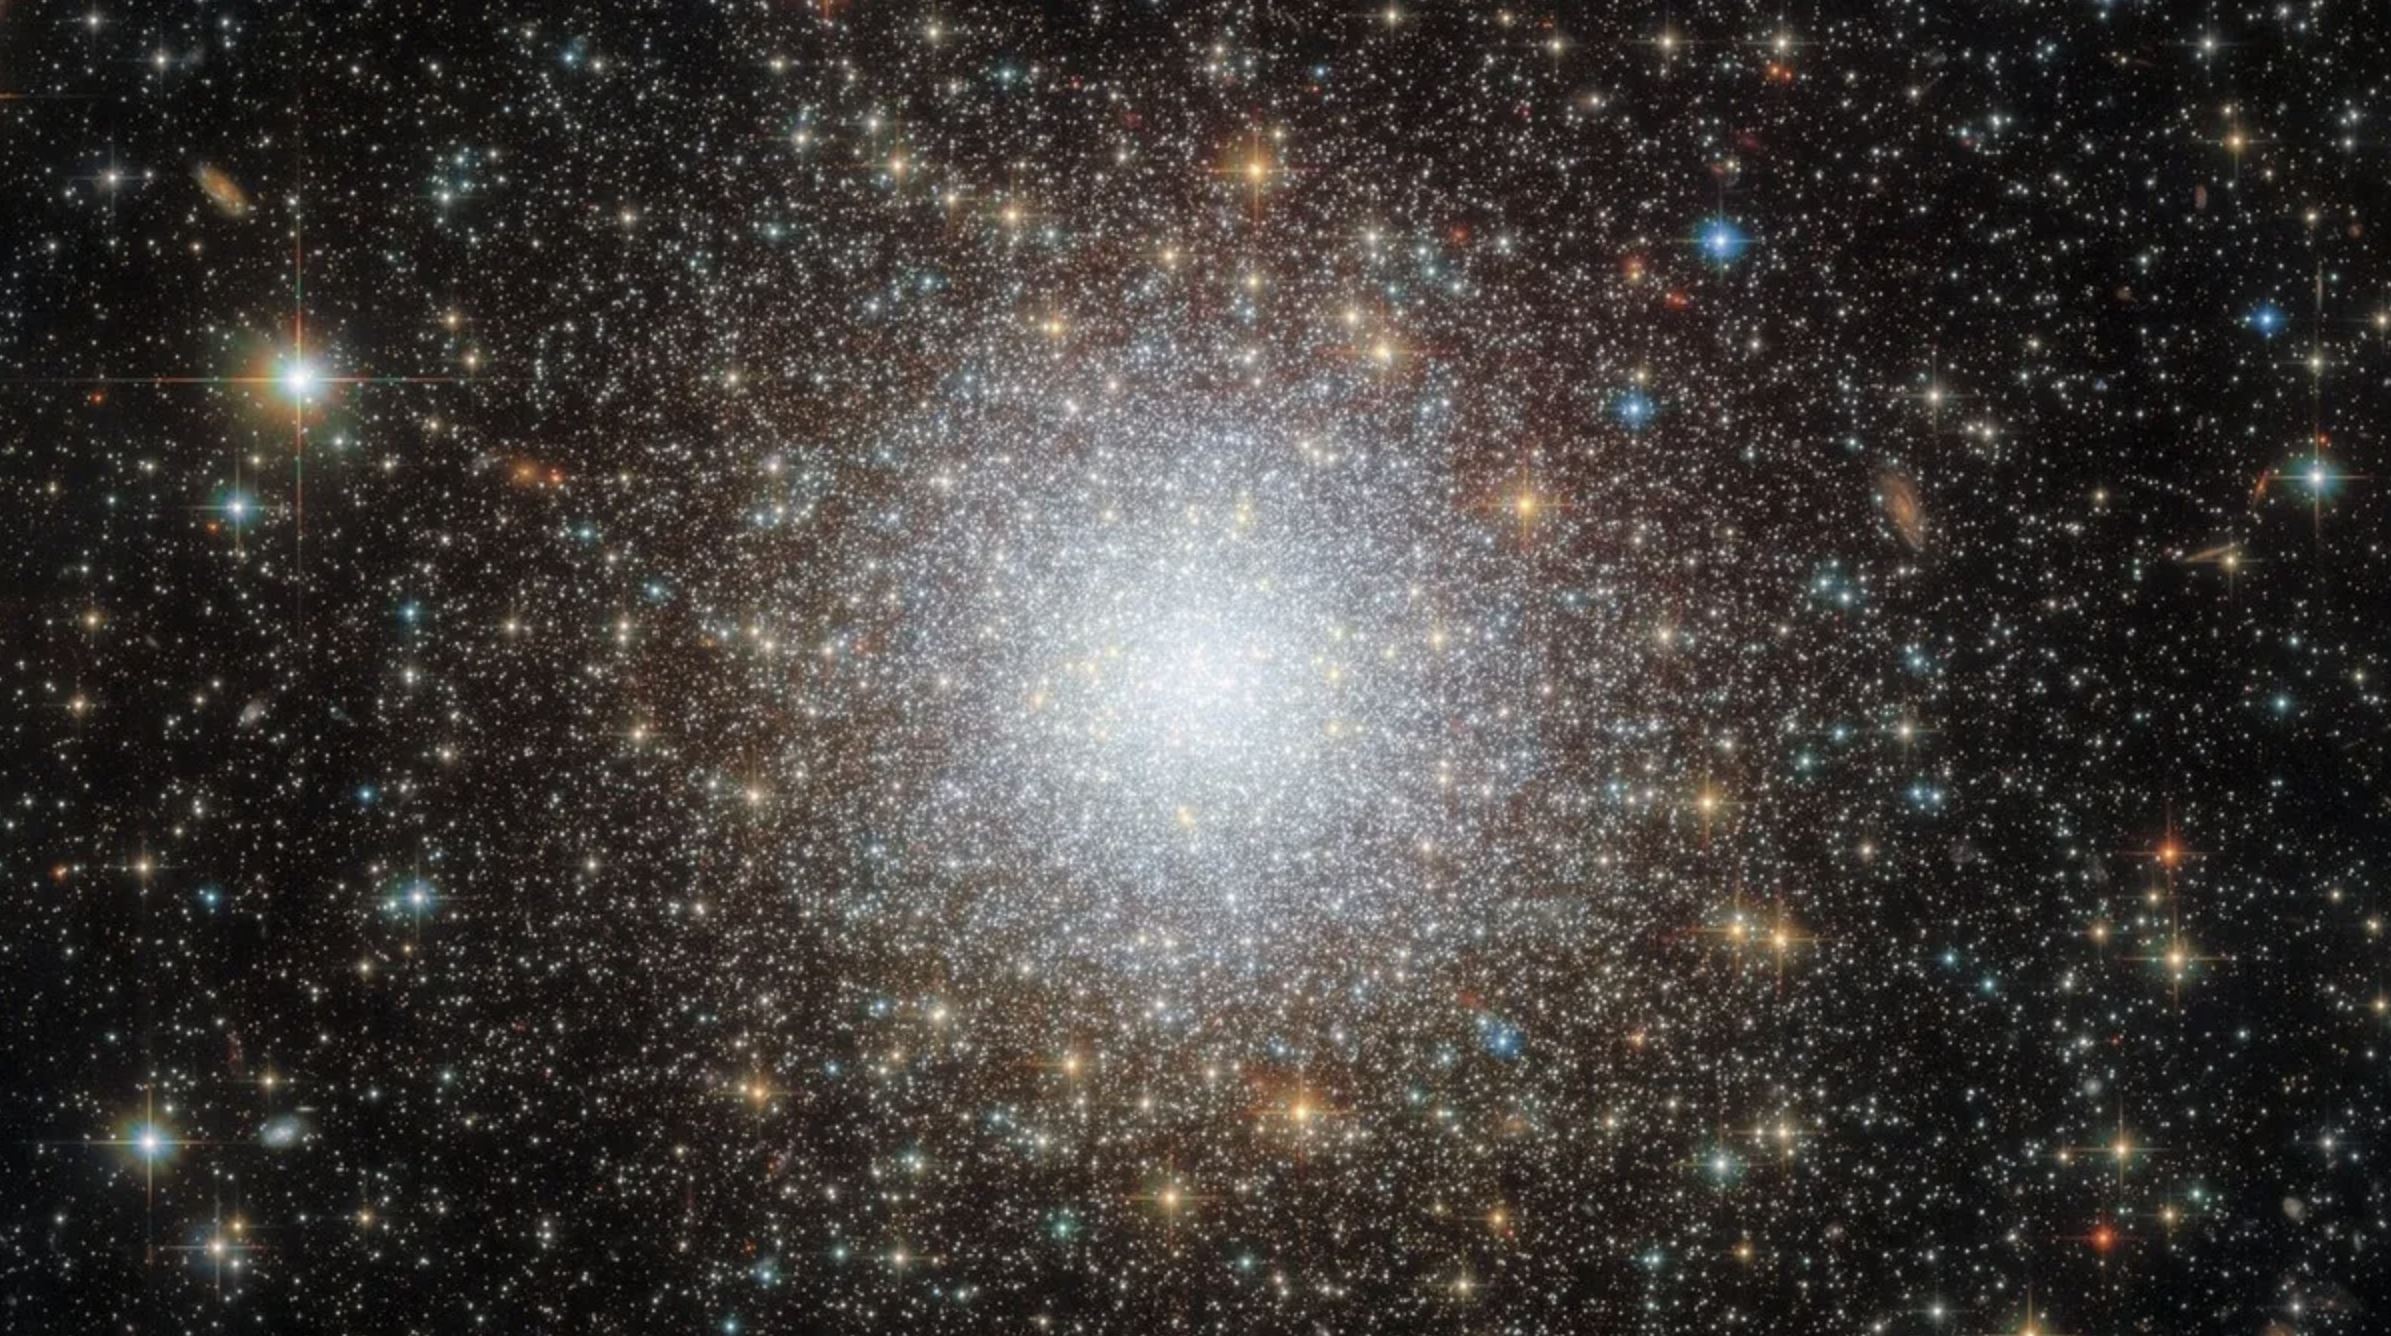 Hubbleov teleskop otkrio svijetlu 'snježnu kuglu' zvijezda u susjedstvu Mliječnog puta